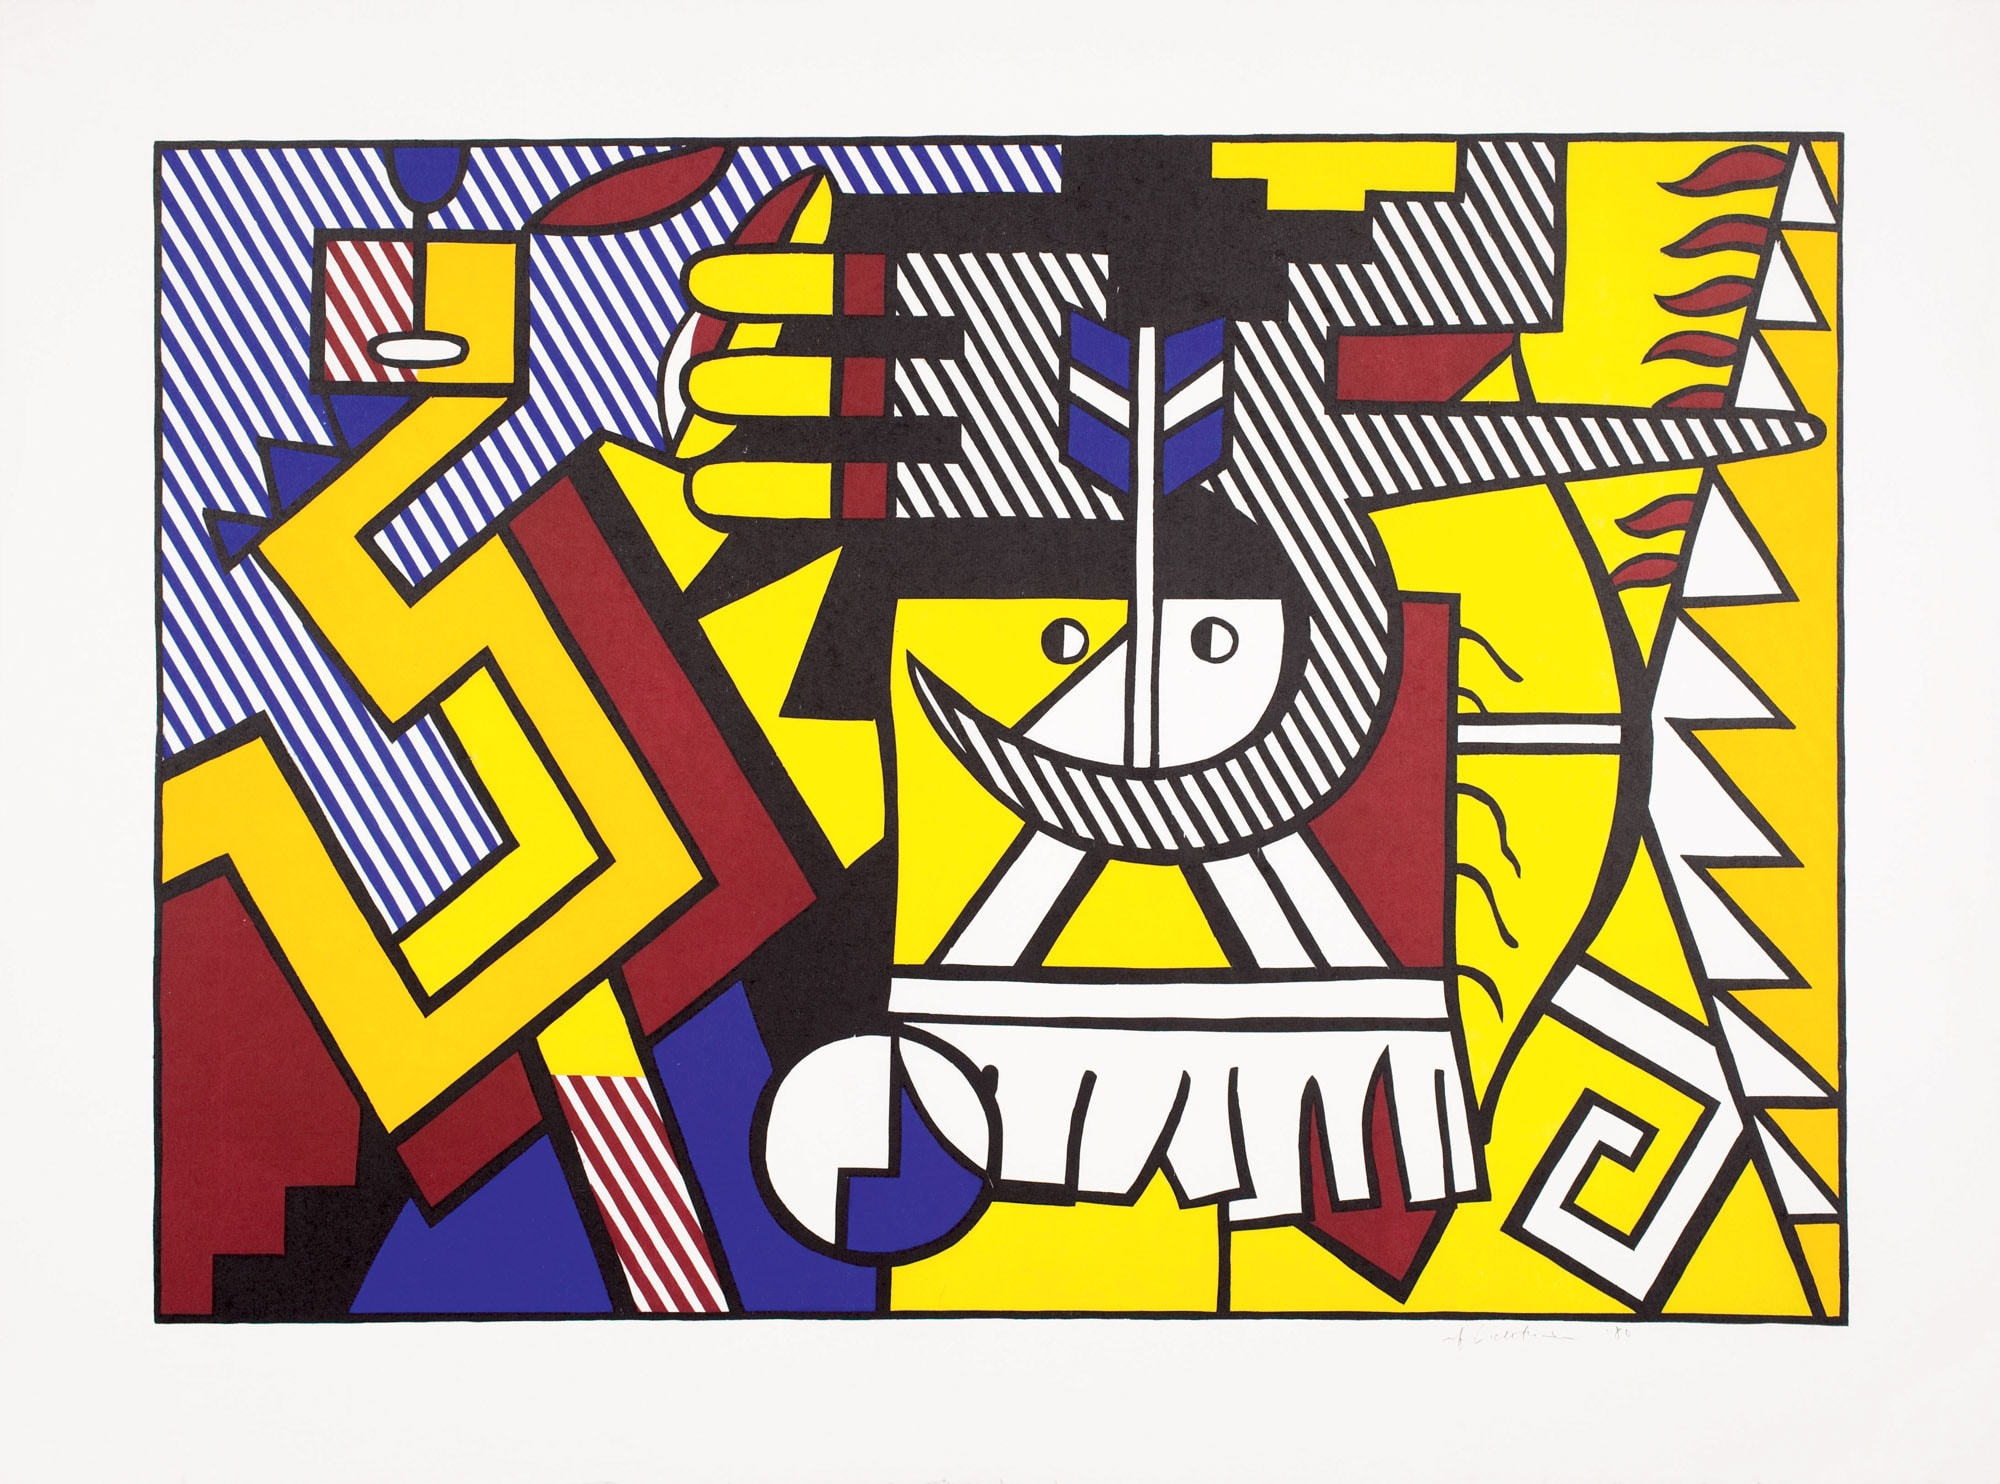 Roy Lichtenstein American Indian Theme VI 1980 xilografia su carta Suzuki lavorata a mano 95.9 x 127.7 cm Collection Walker Art Center, Minneapolis Gift of Dr.Maclyn E. Wade, 1984 ©Estate of Roy Lichtenstein